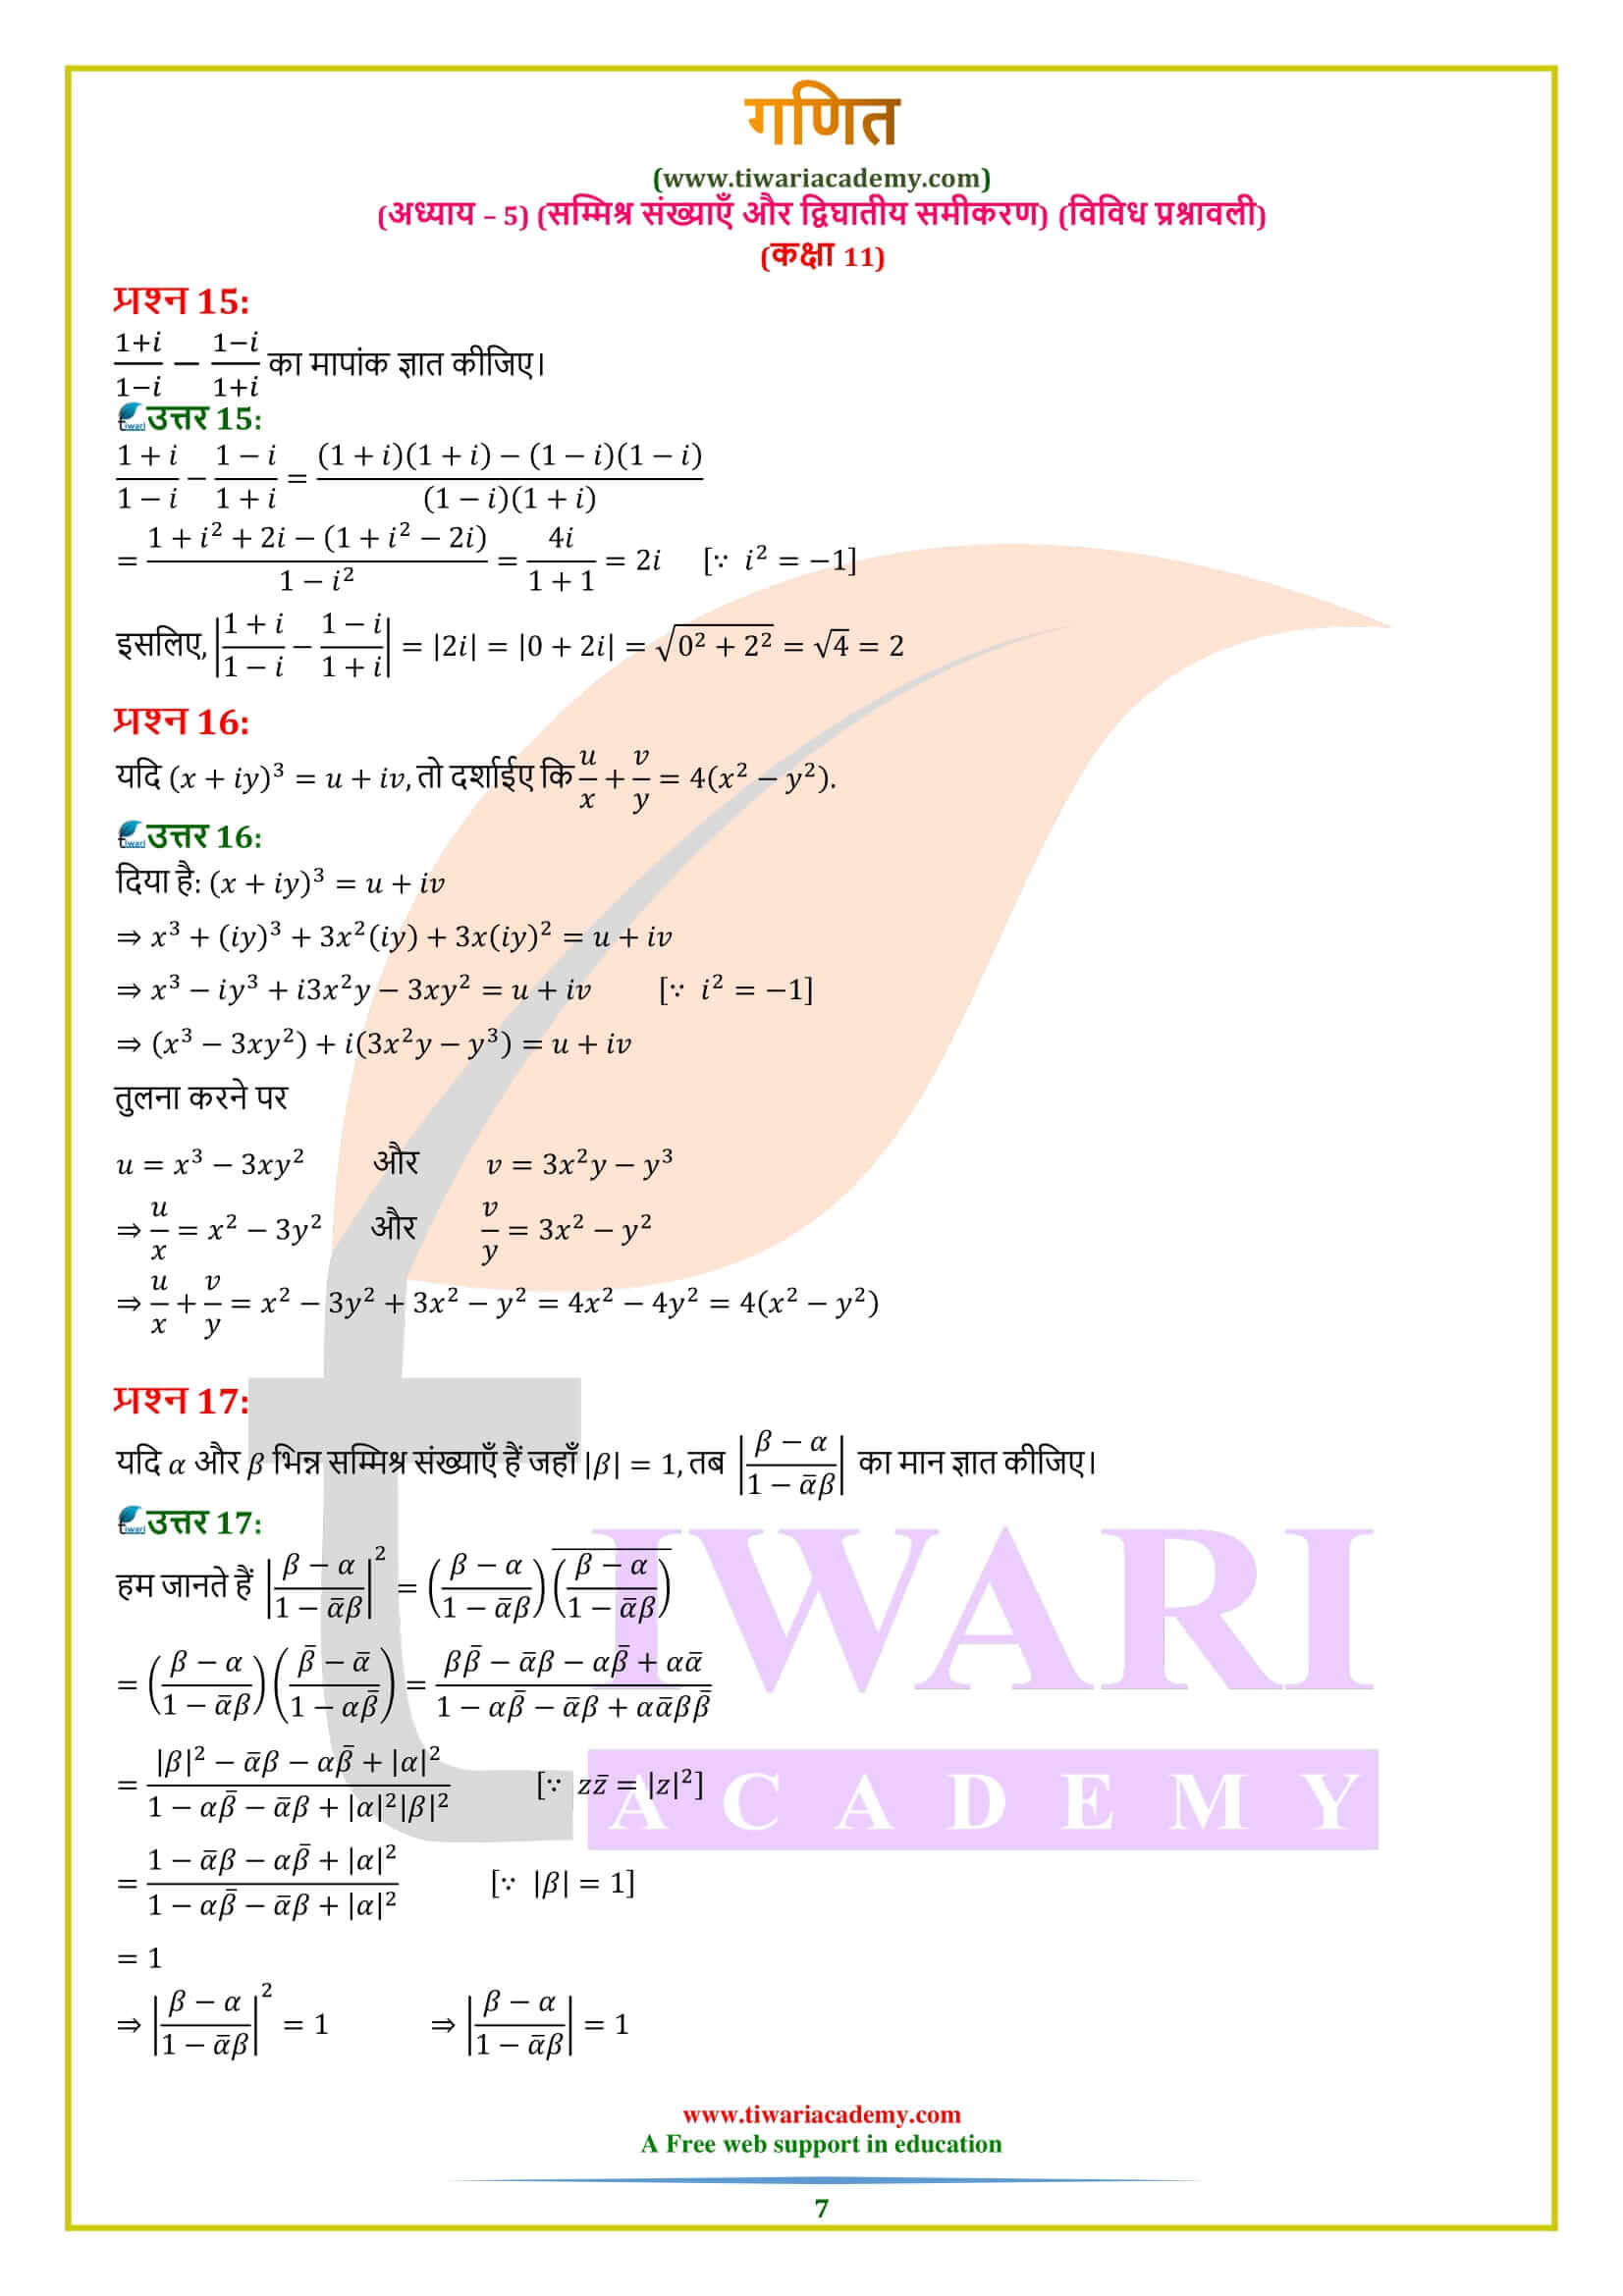 एनसीईआरटी समाधान कक्षा 11 गणित अध्याय 5 विविध प्रश्नावली हिंदी में